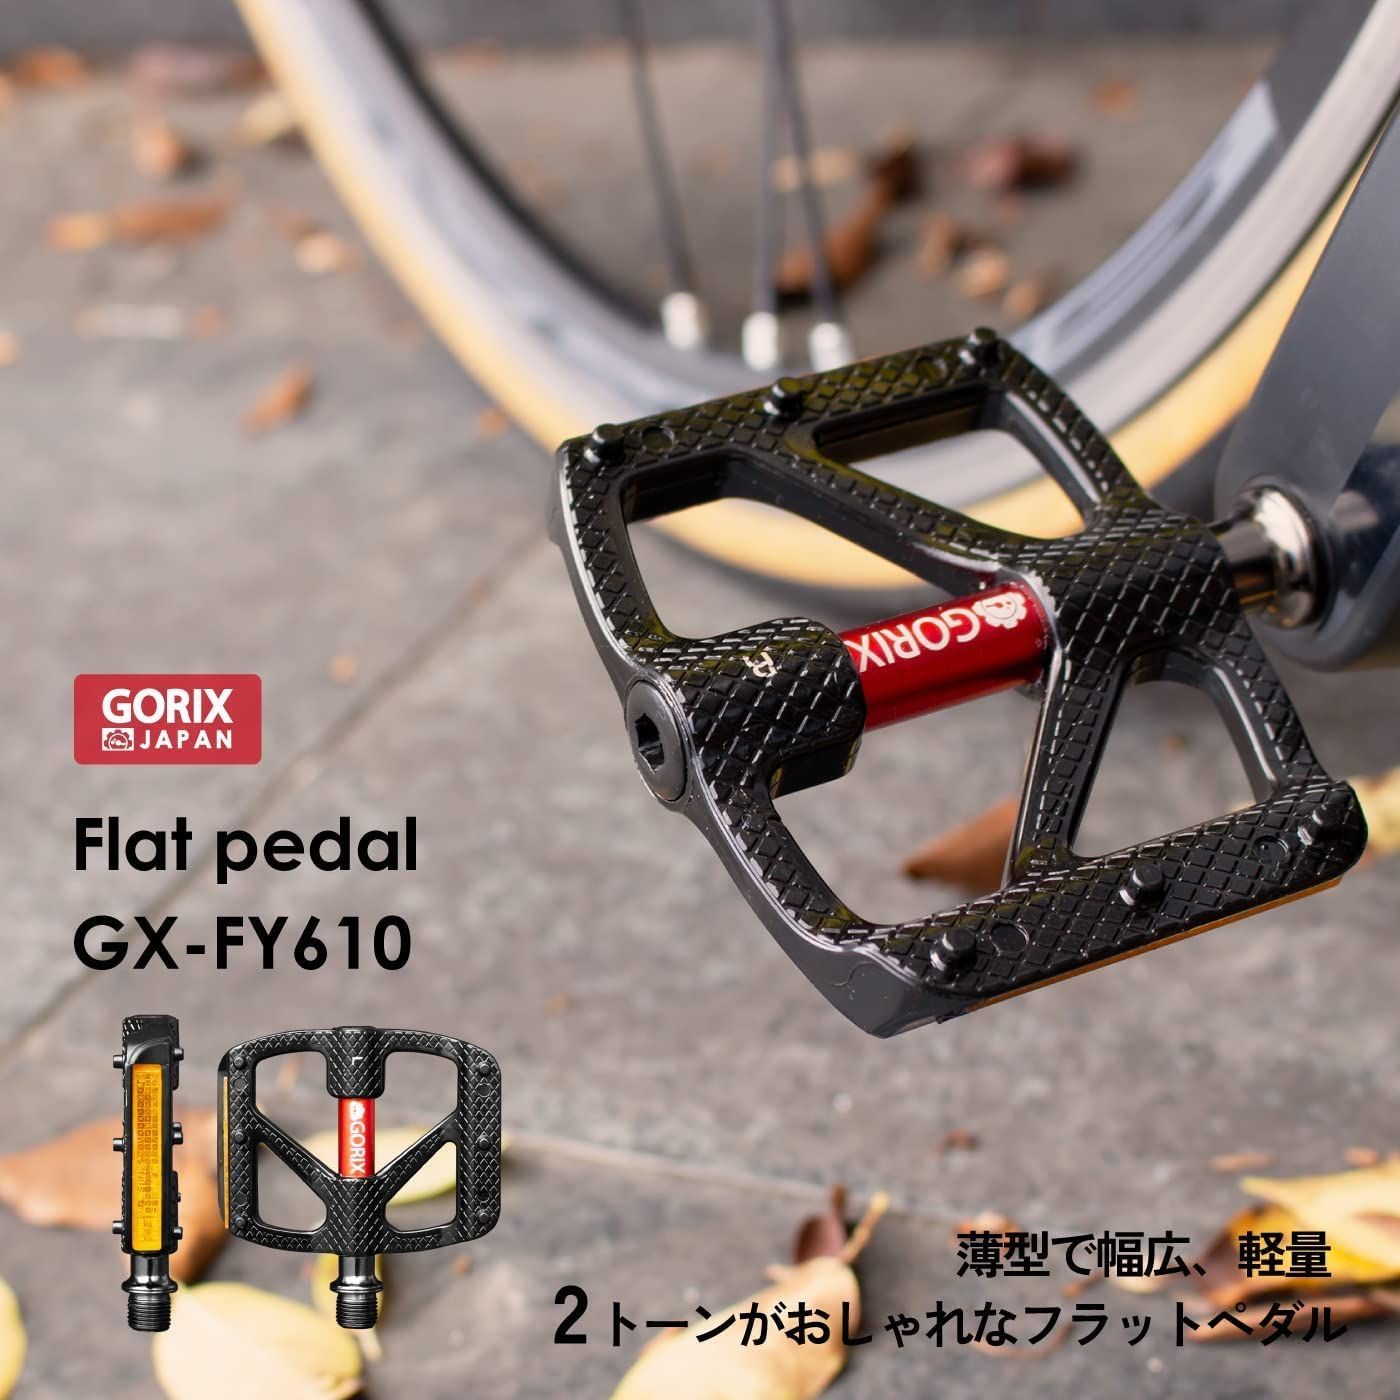 GORIX ゴリックス フラットペダル オイルスリック 自転車 ペダル (GX-FX181) 軽量 アルミ CNC 高回転 滑らか 3ベアリング 滑り止め ピン付き おしゃれ ペダル交換 ロードバイク クロスバイク等